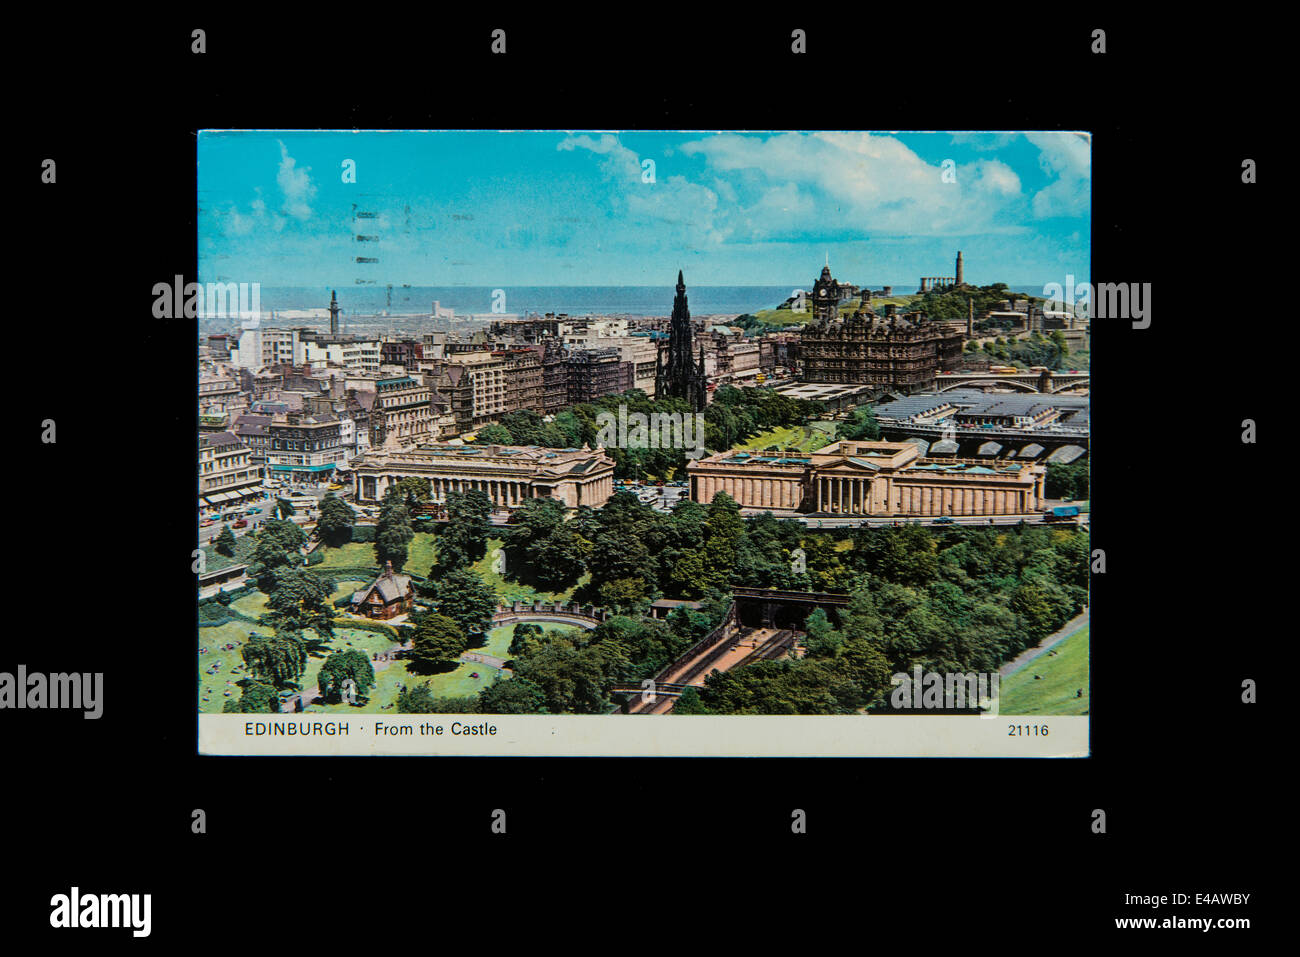 Edimburgo en una vieja postal Foto de stock